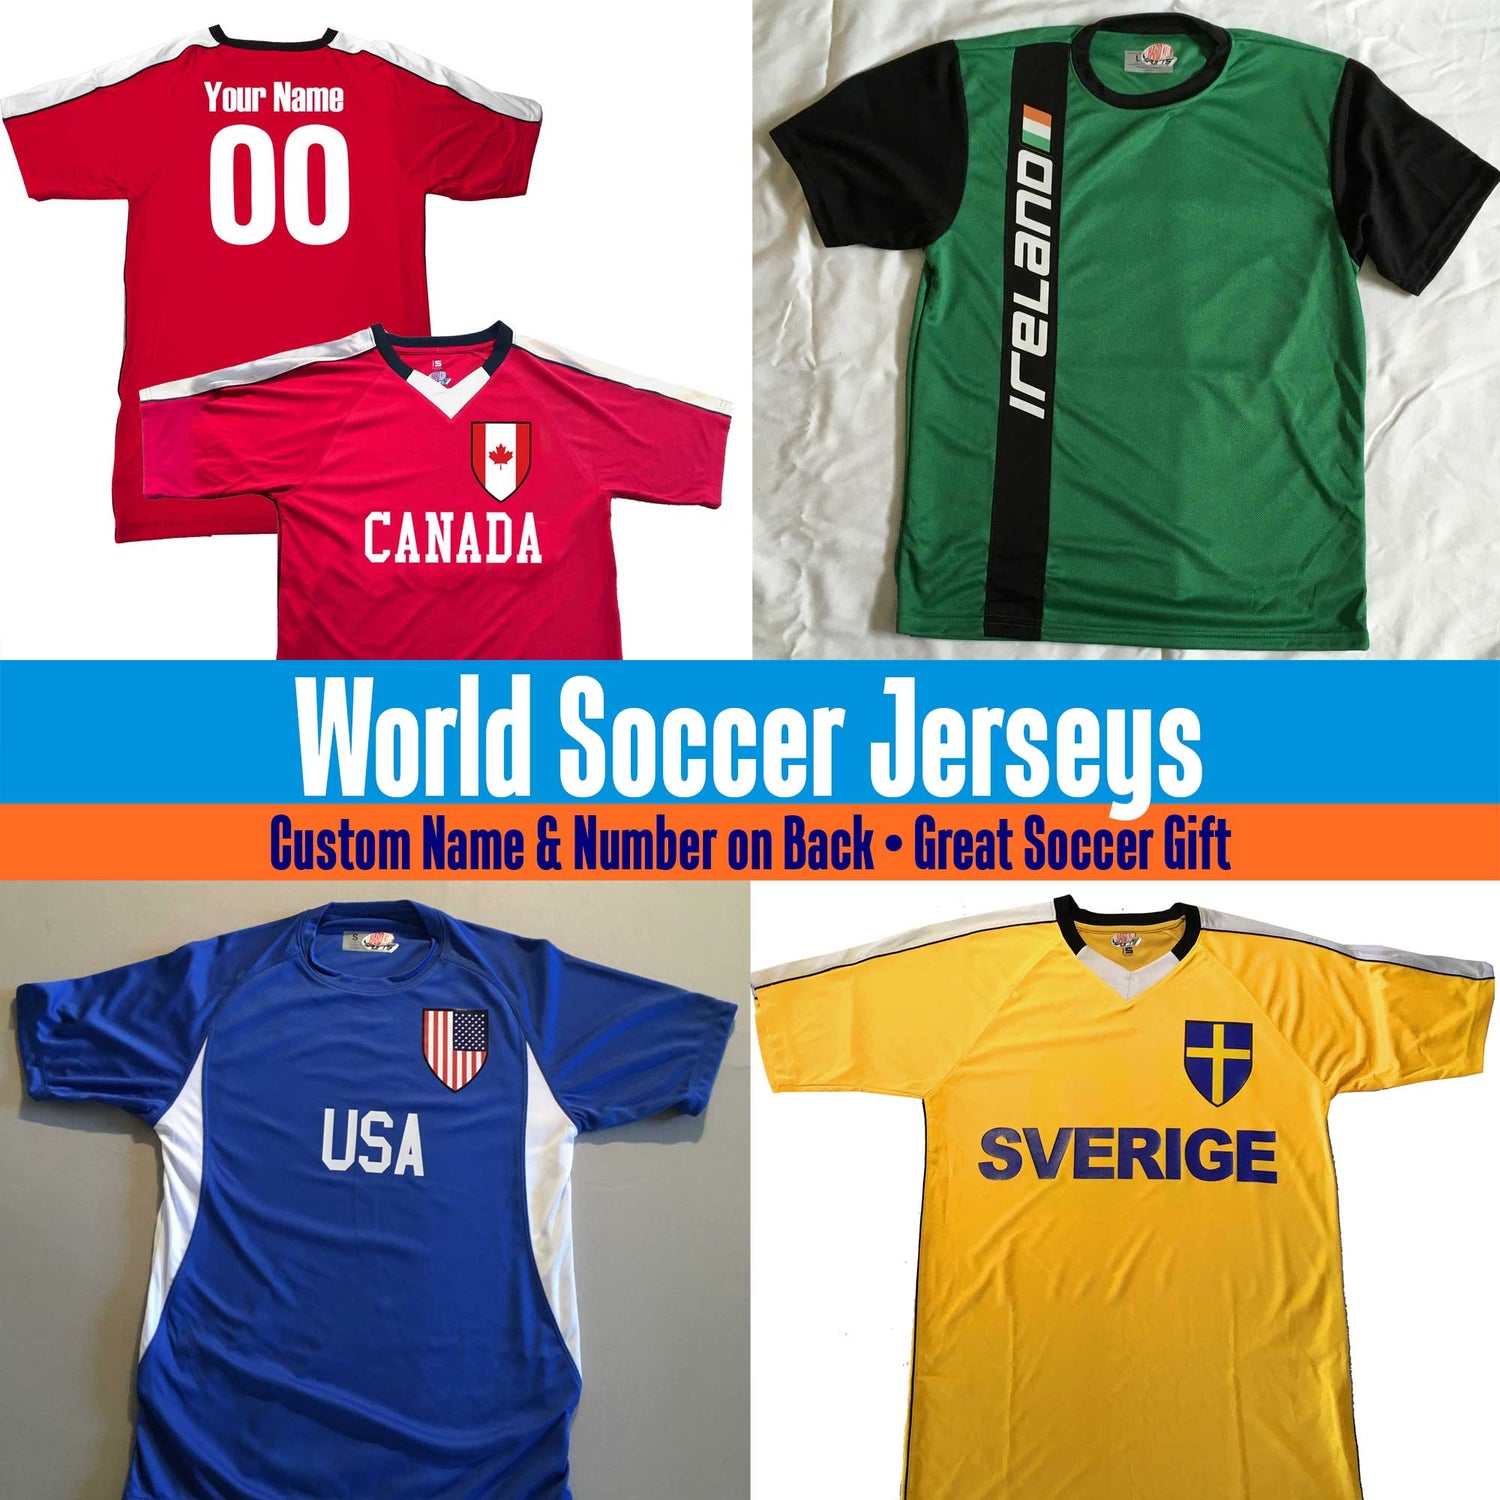 World Soccer Jerseys